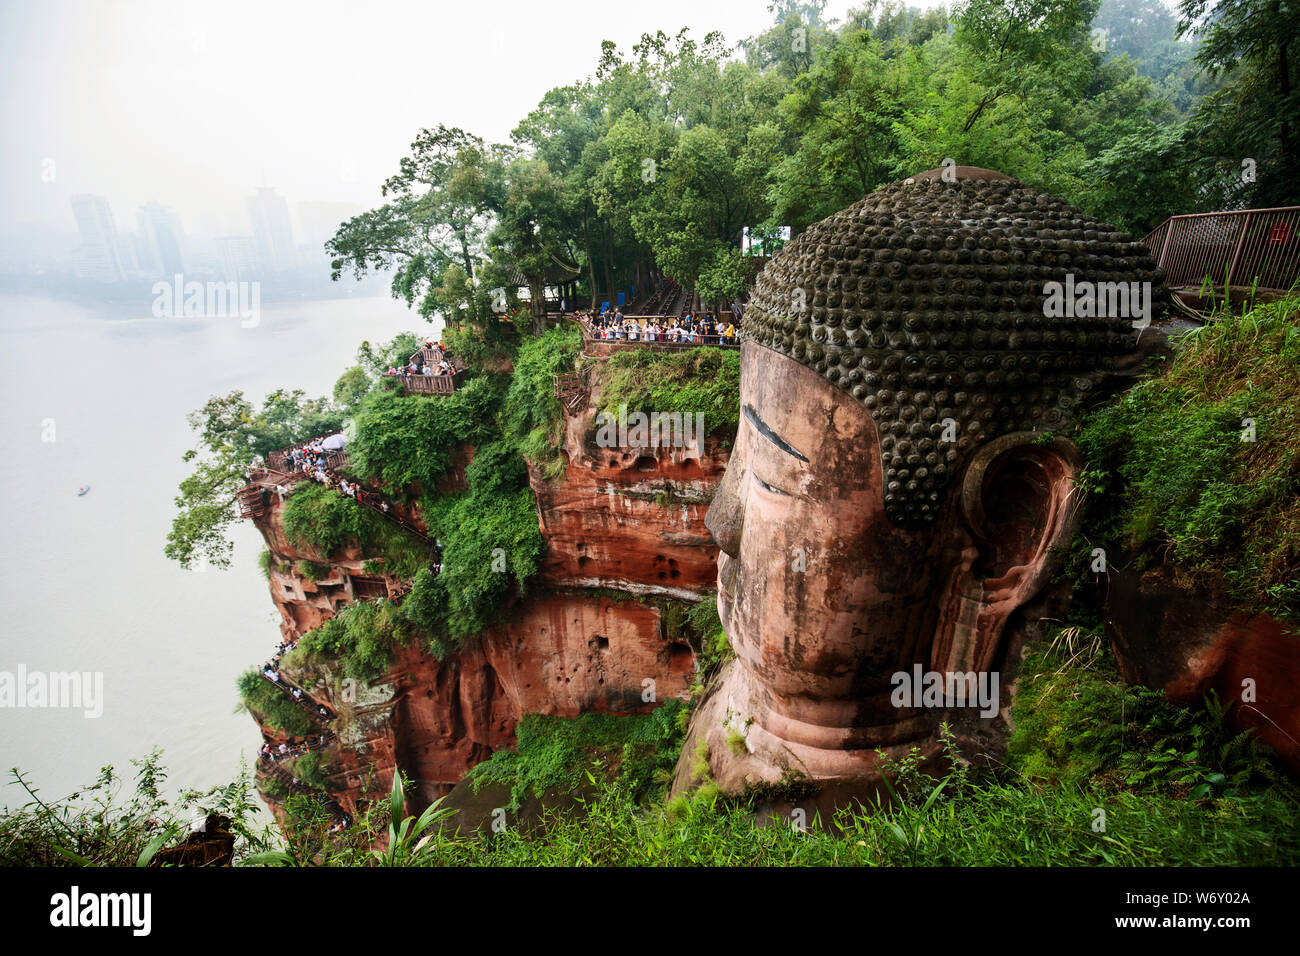 Seitenansicht des Leshan Giant Buddha in der Provinz Sichuan, China. Größte Buddha in der Welt. Stockfoto